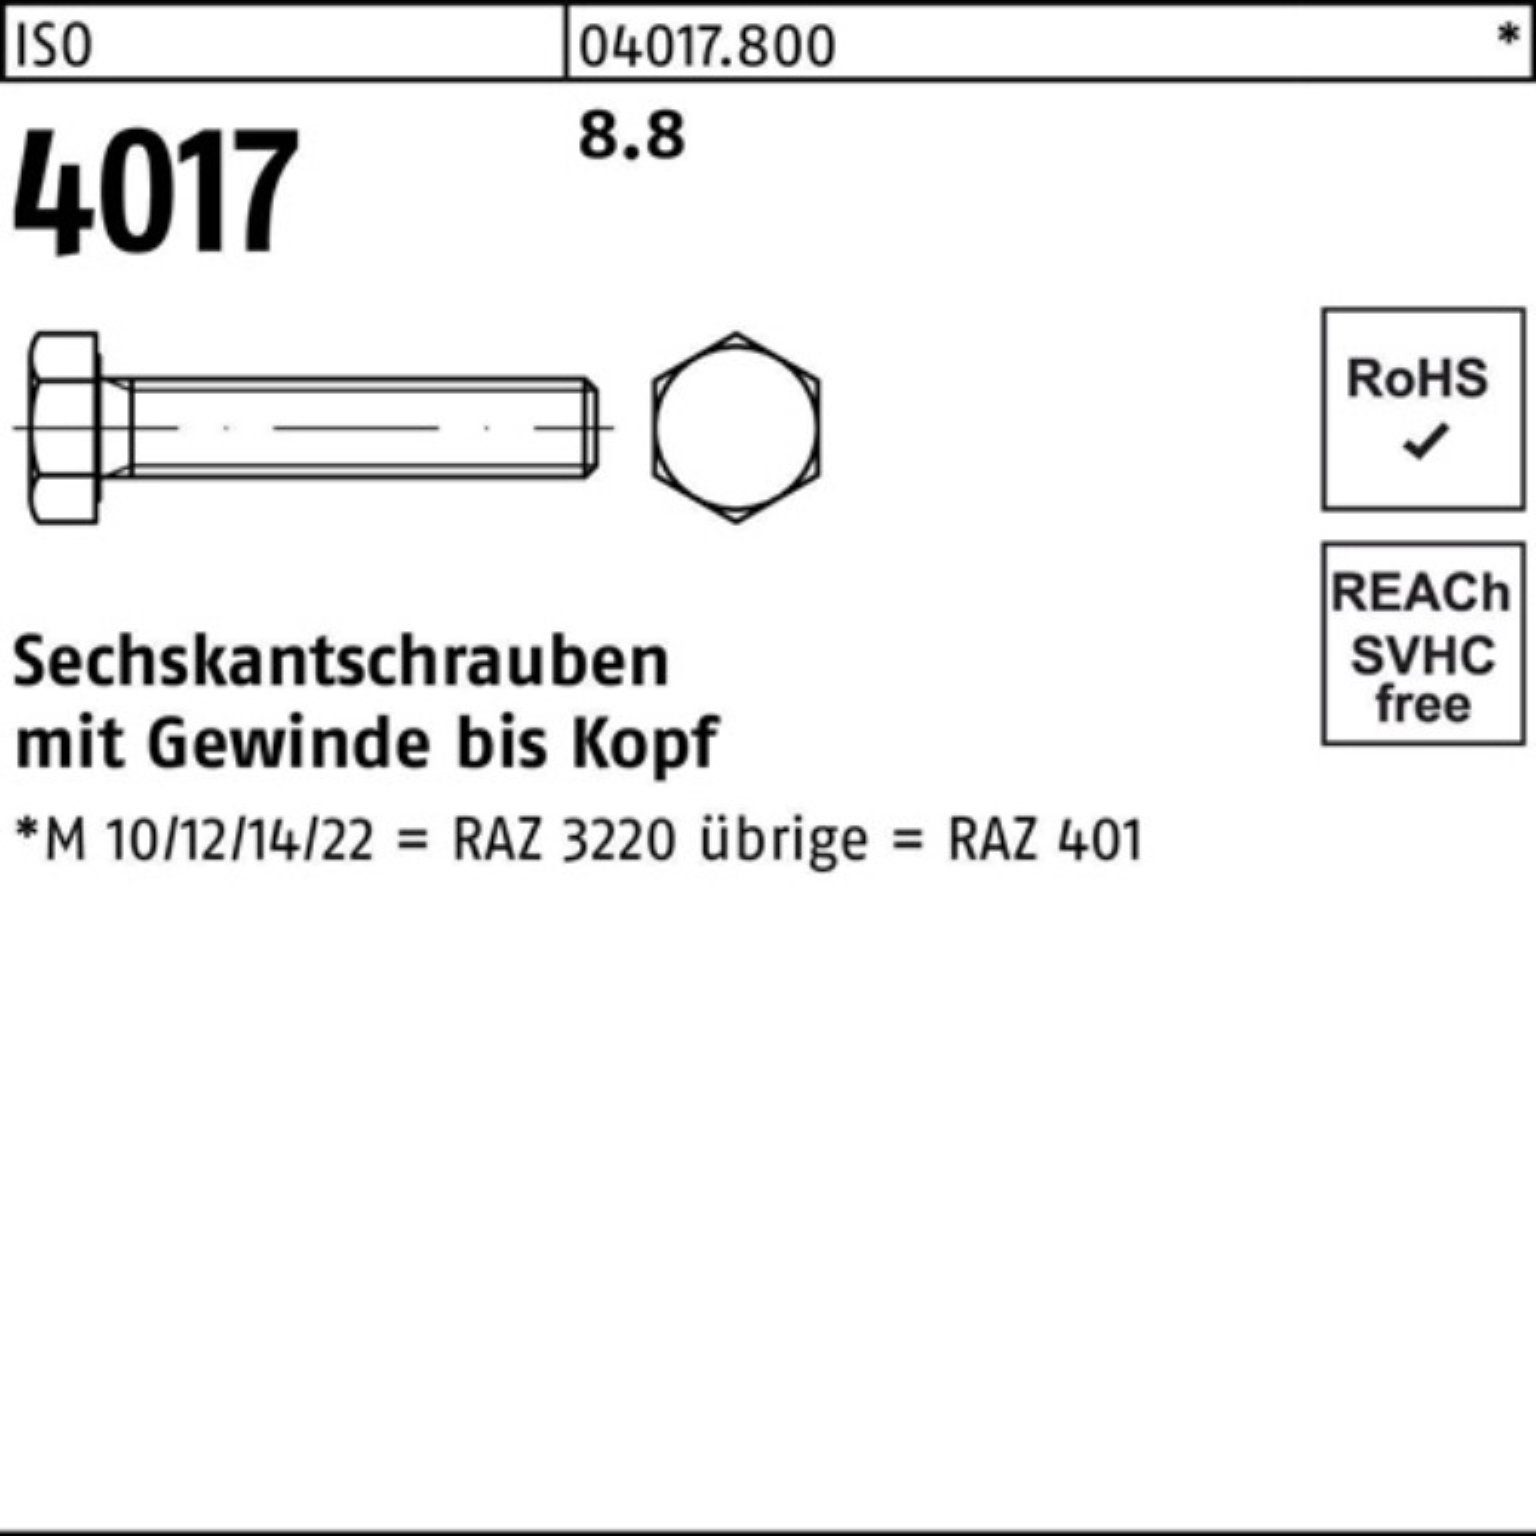 Pack ISO 100er ISO Bufab Sechskantschraube M42x 4017 1 4017 VG 80 Sechskantschraube Stück 8.8